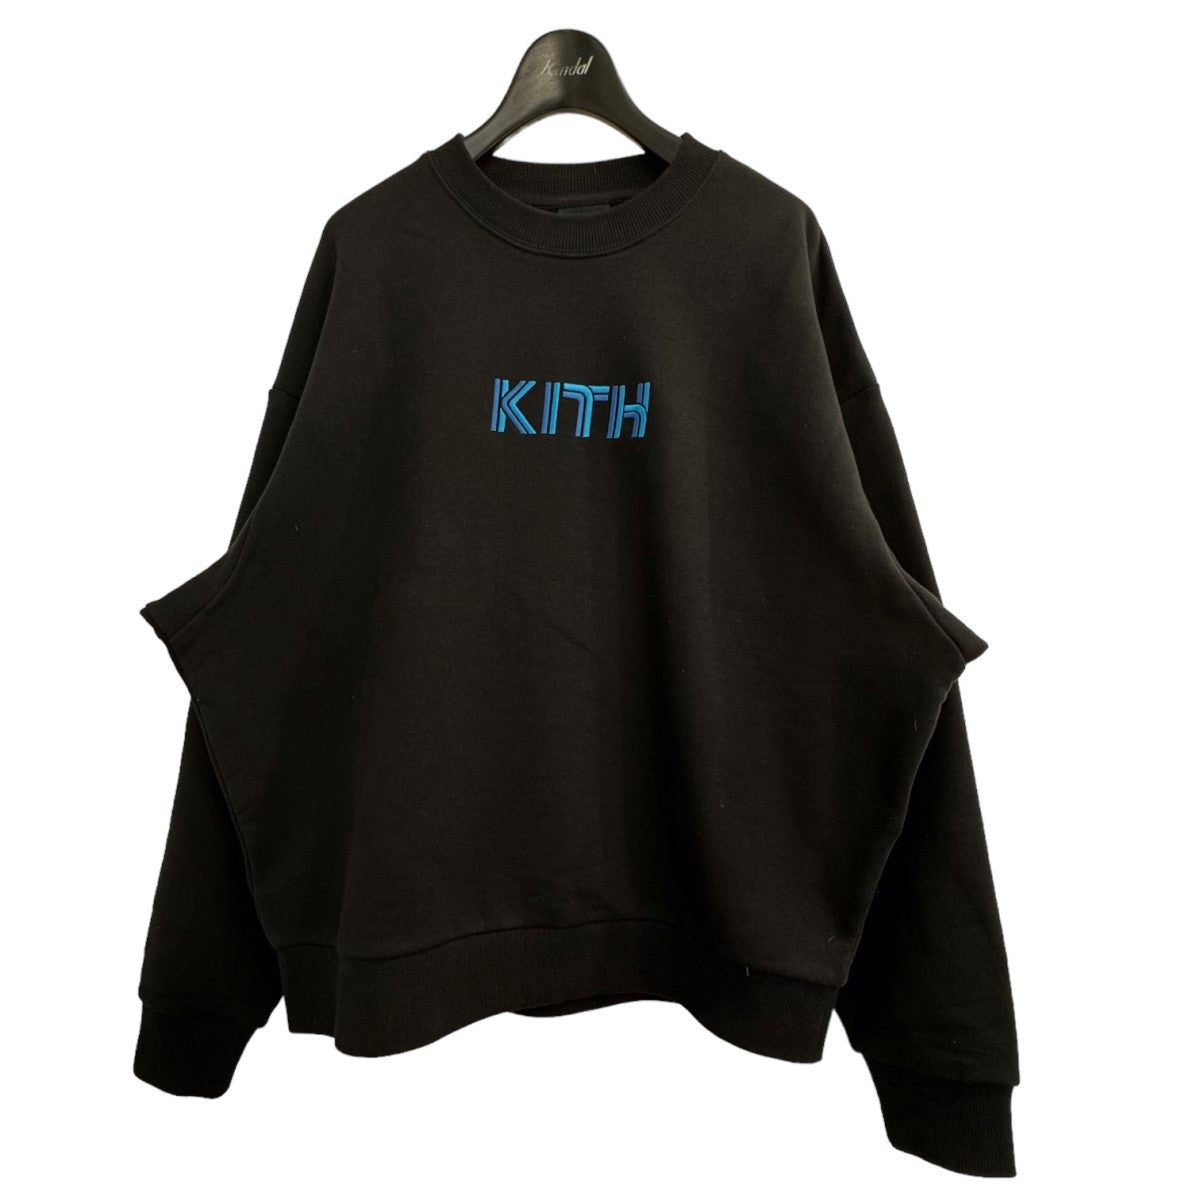 KITH(キス) フロント刺繍スウェット 23 070 060 0097 4 0 ブラック ...